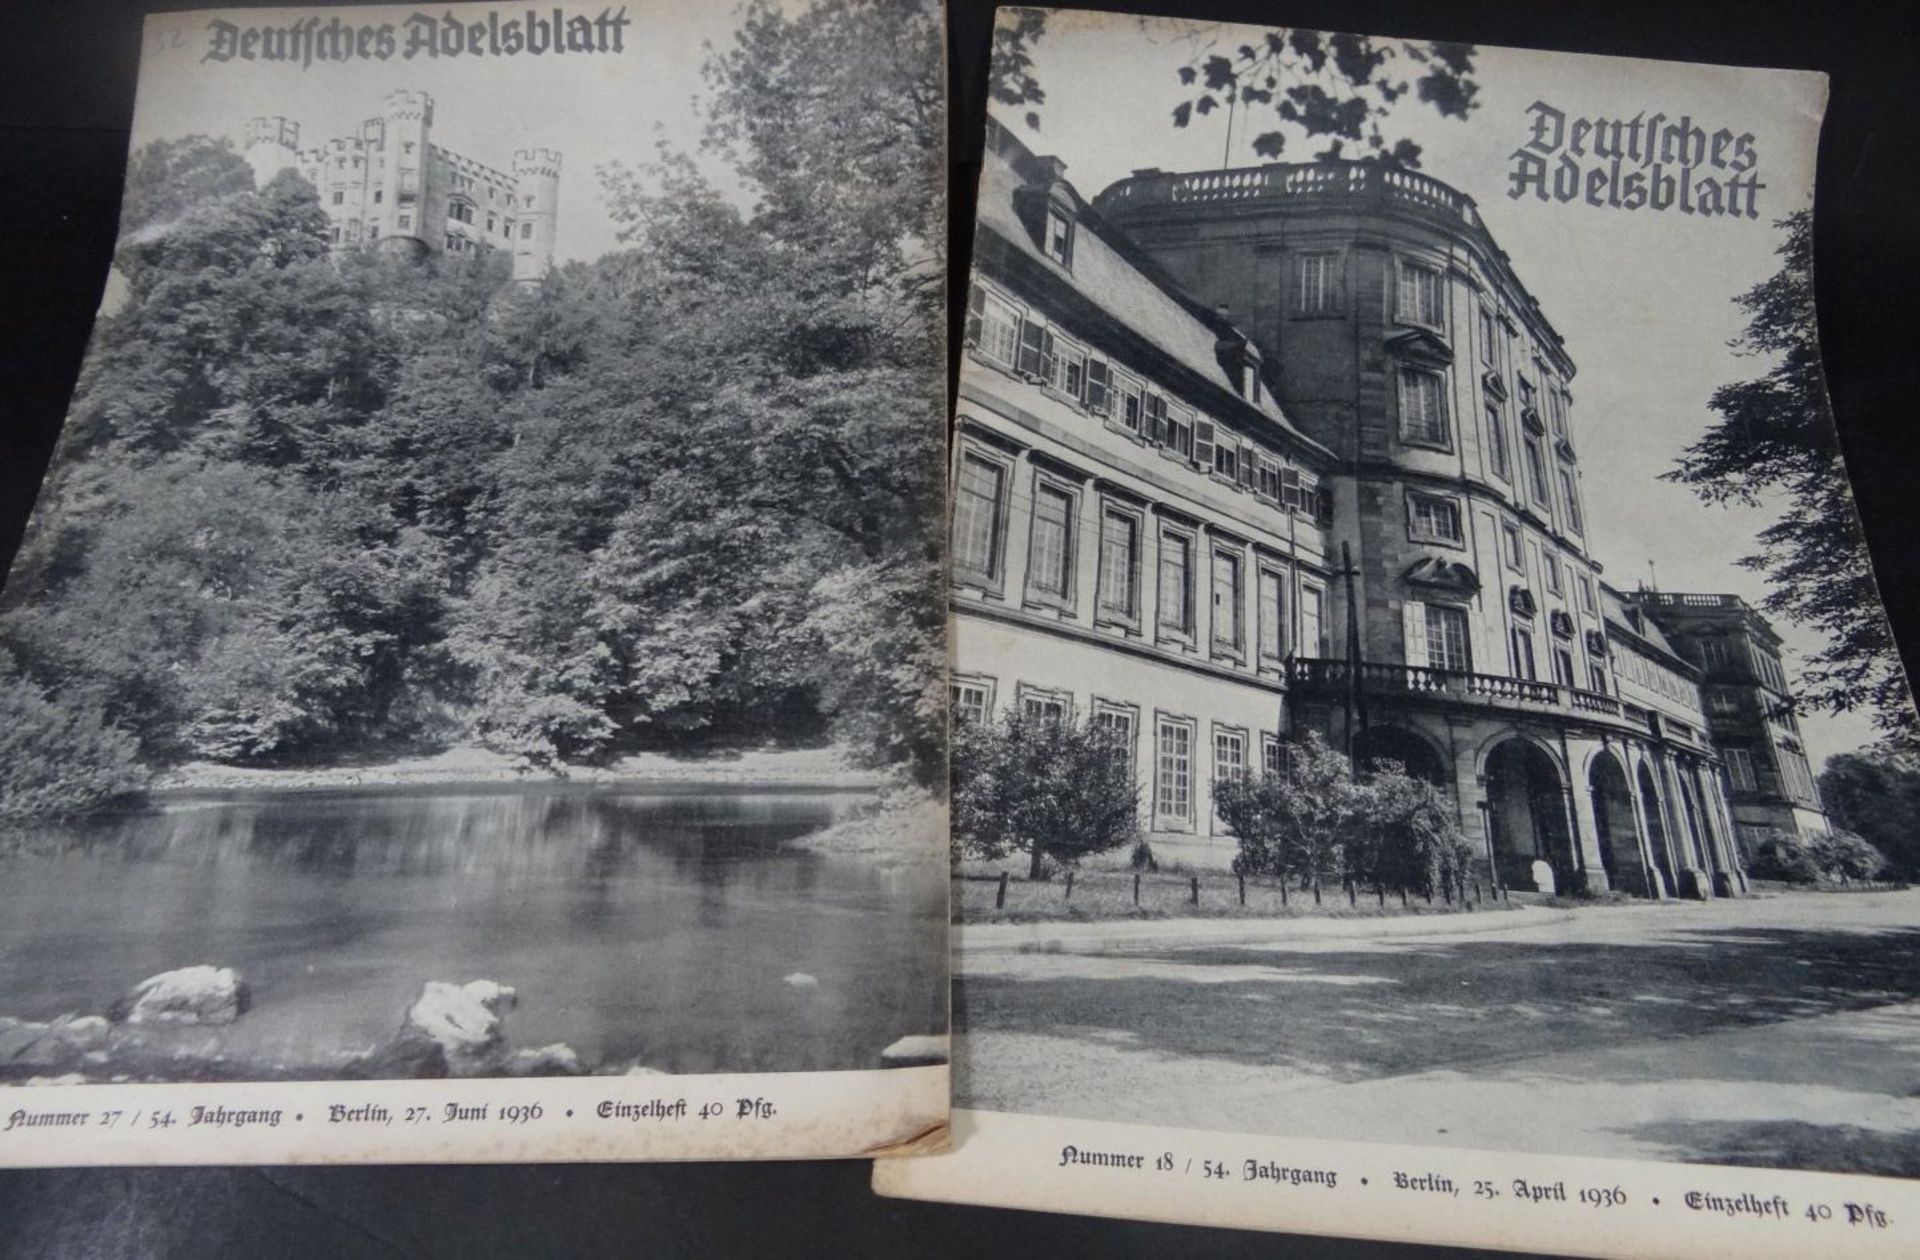 2 Hefte "Deutsches Adelsblatt" 1936- - -22.61 % buyer's premium on the hammer priceVAT margin